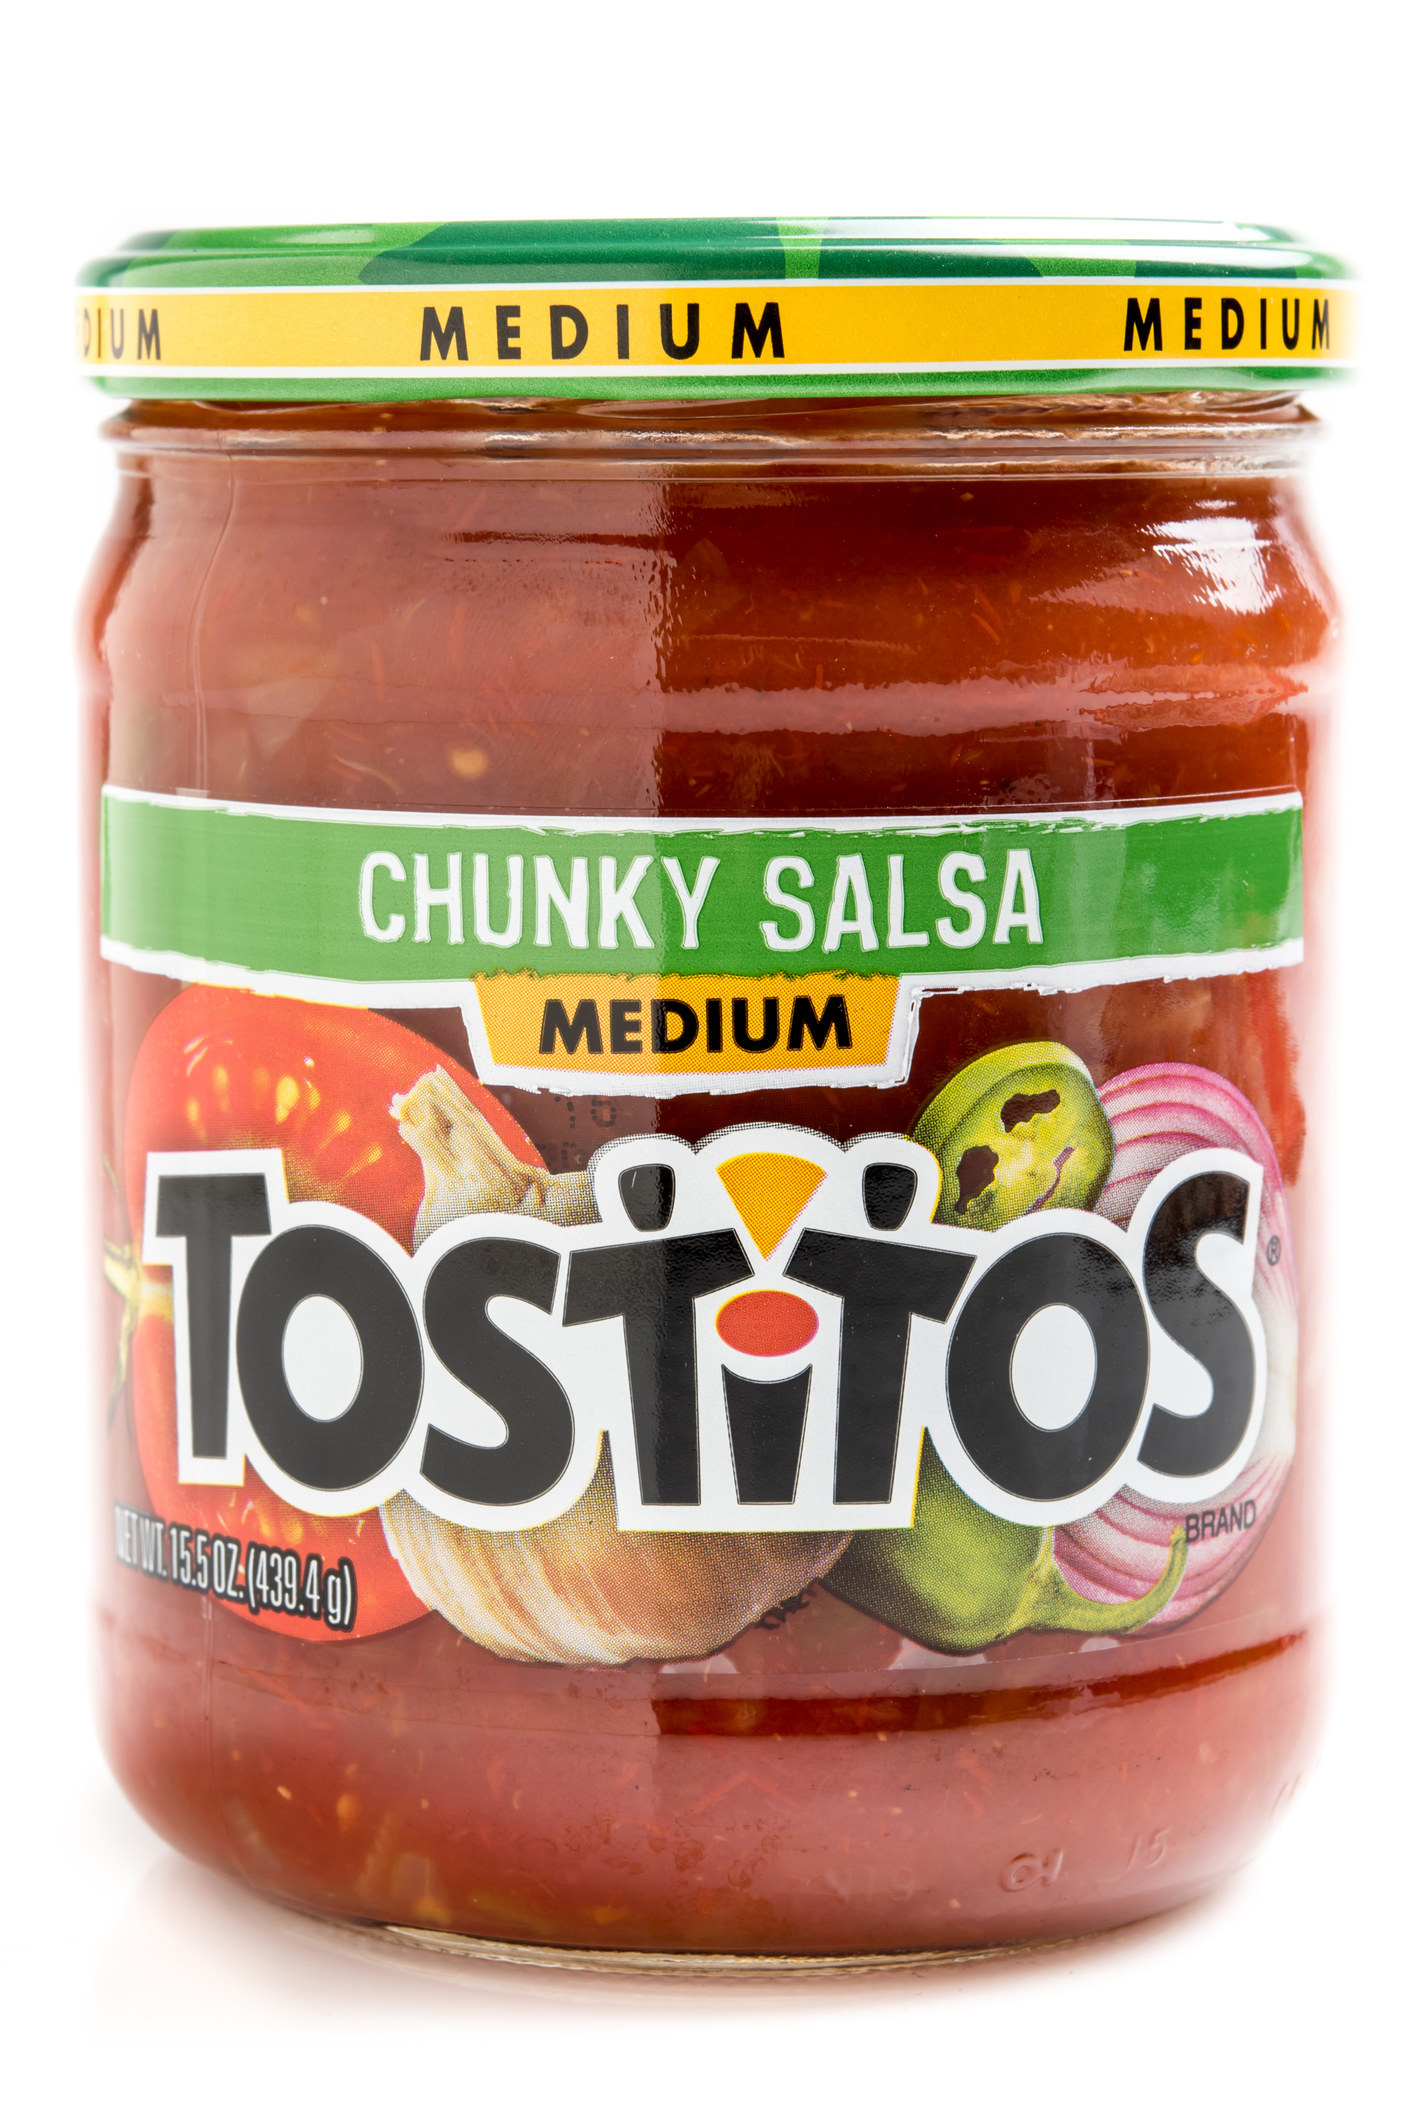 A jar of Tostitos salsa.